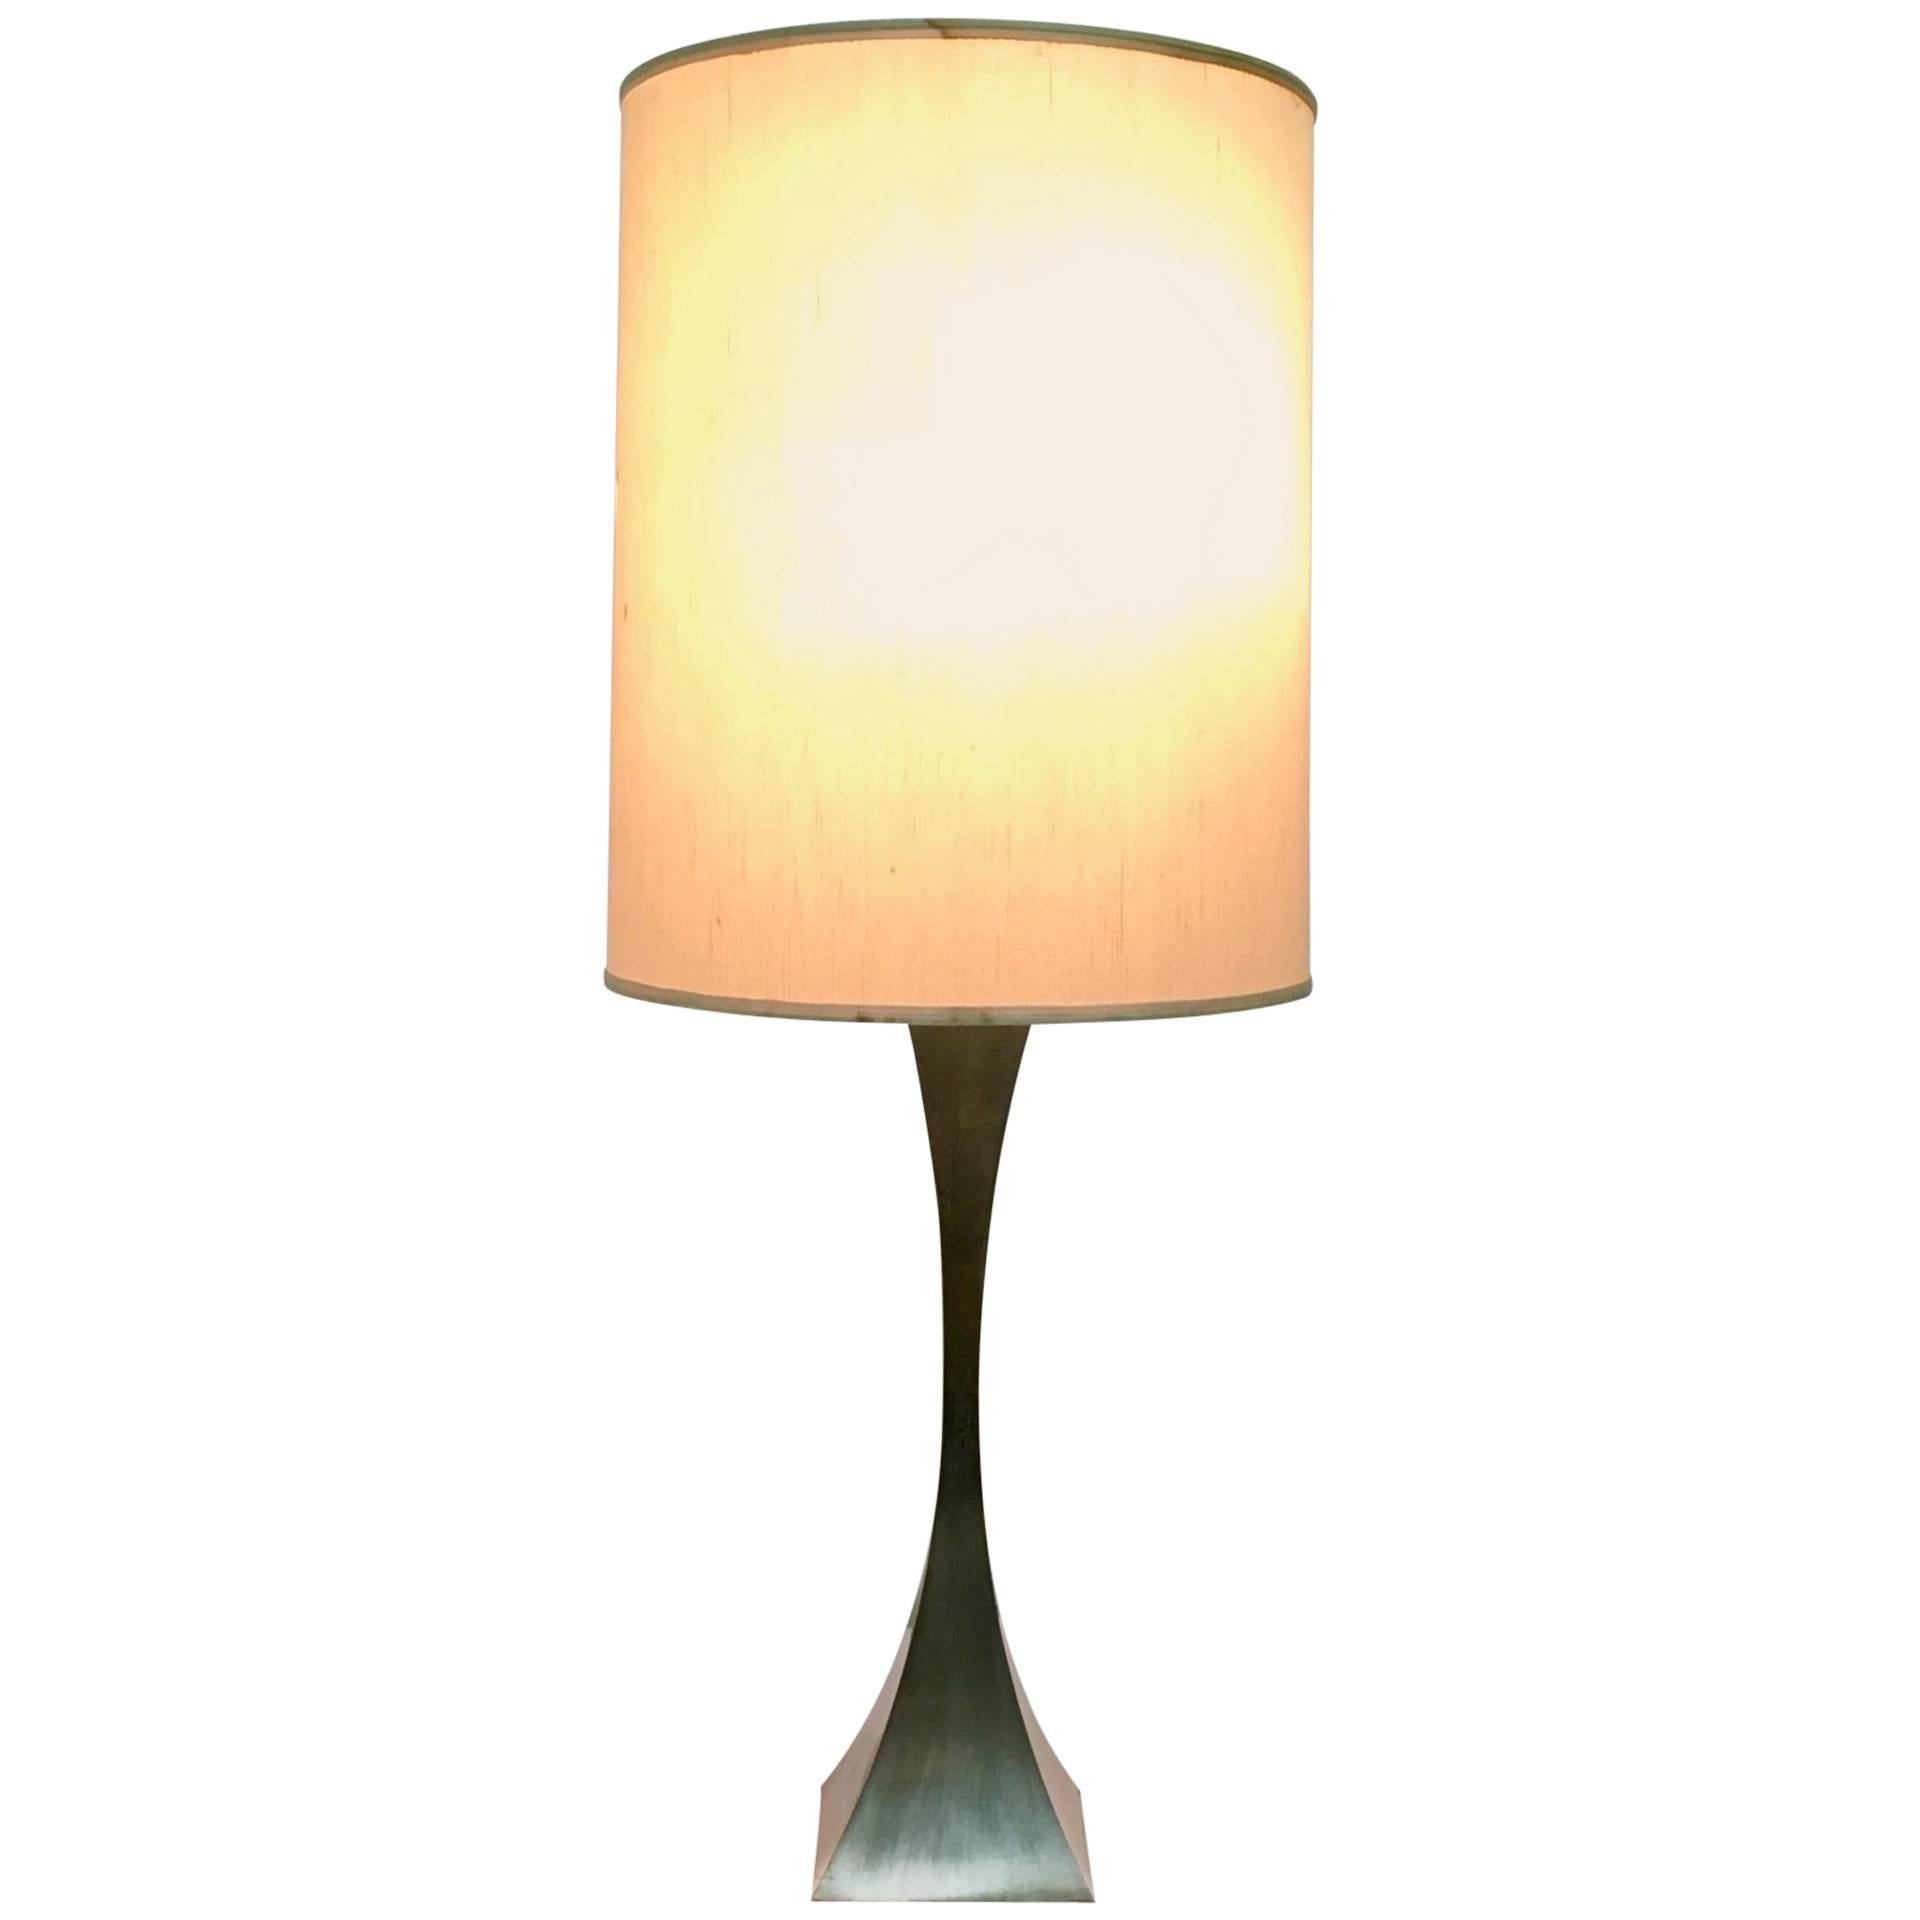 Fabriquées en Italie.
Cette lampe de table a été conçue par Tonello et Montagna Grillo pour High Society, en 1972. 
Sa structure est en métal chromé.
Cette lampe est une pièce d'époque, elle peut donc présenter de légères traces d'utilisation, mais